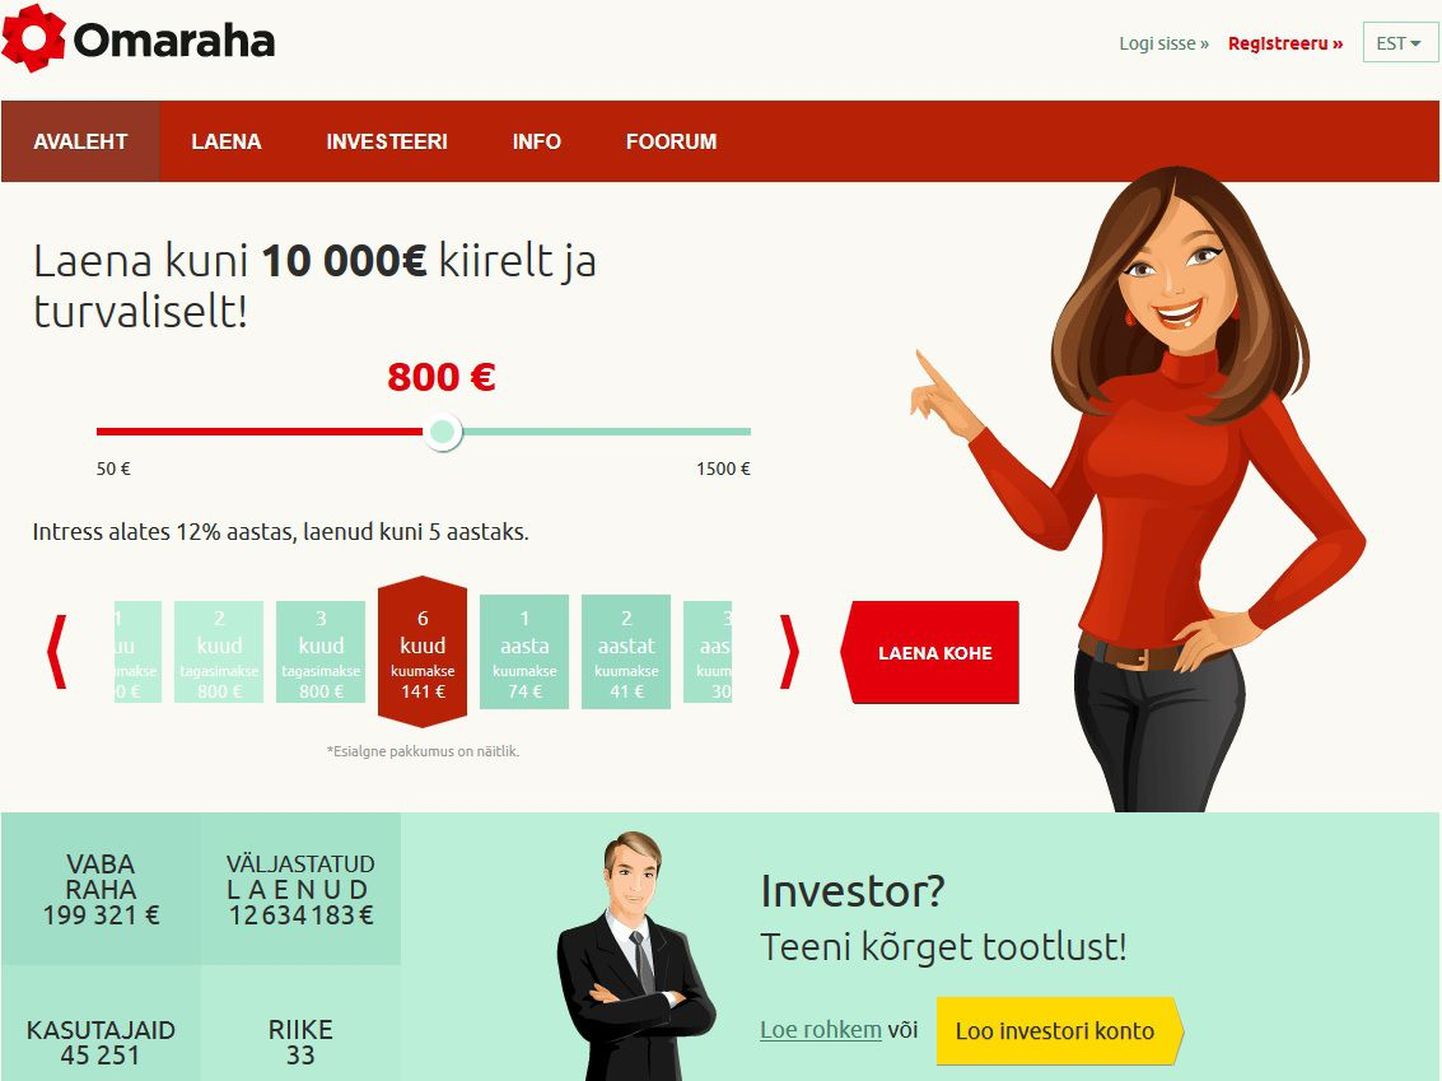 Официальный сайт фирмы Omaraha